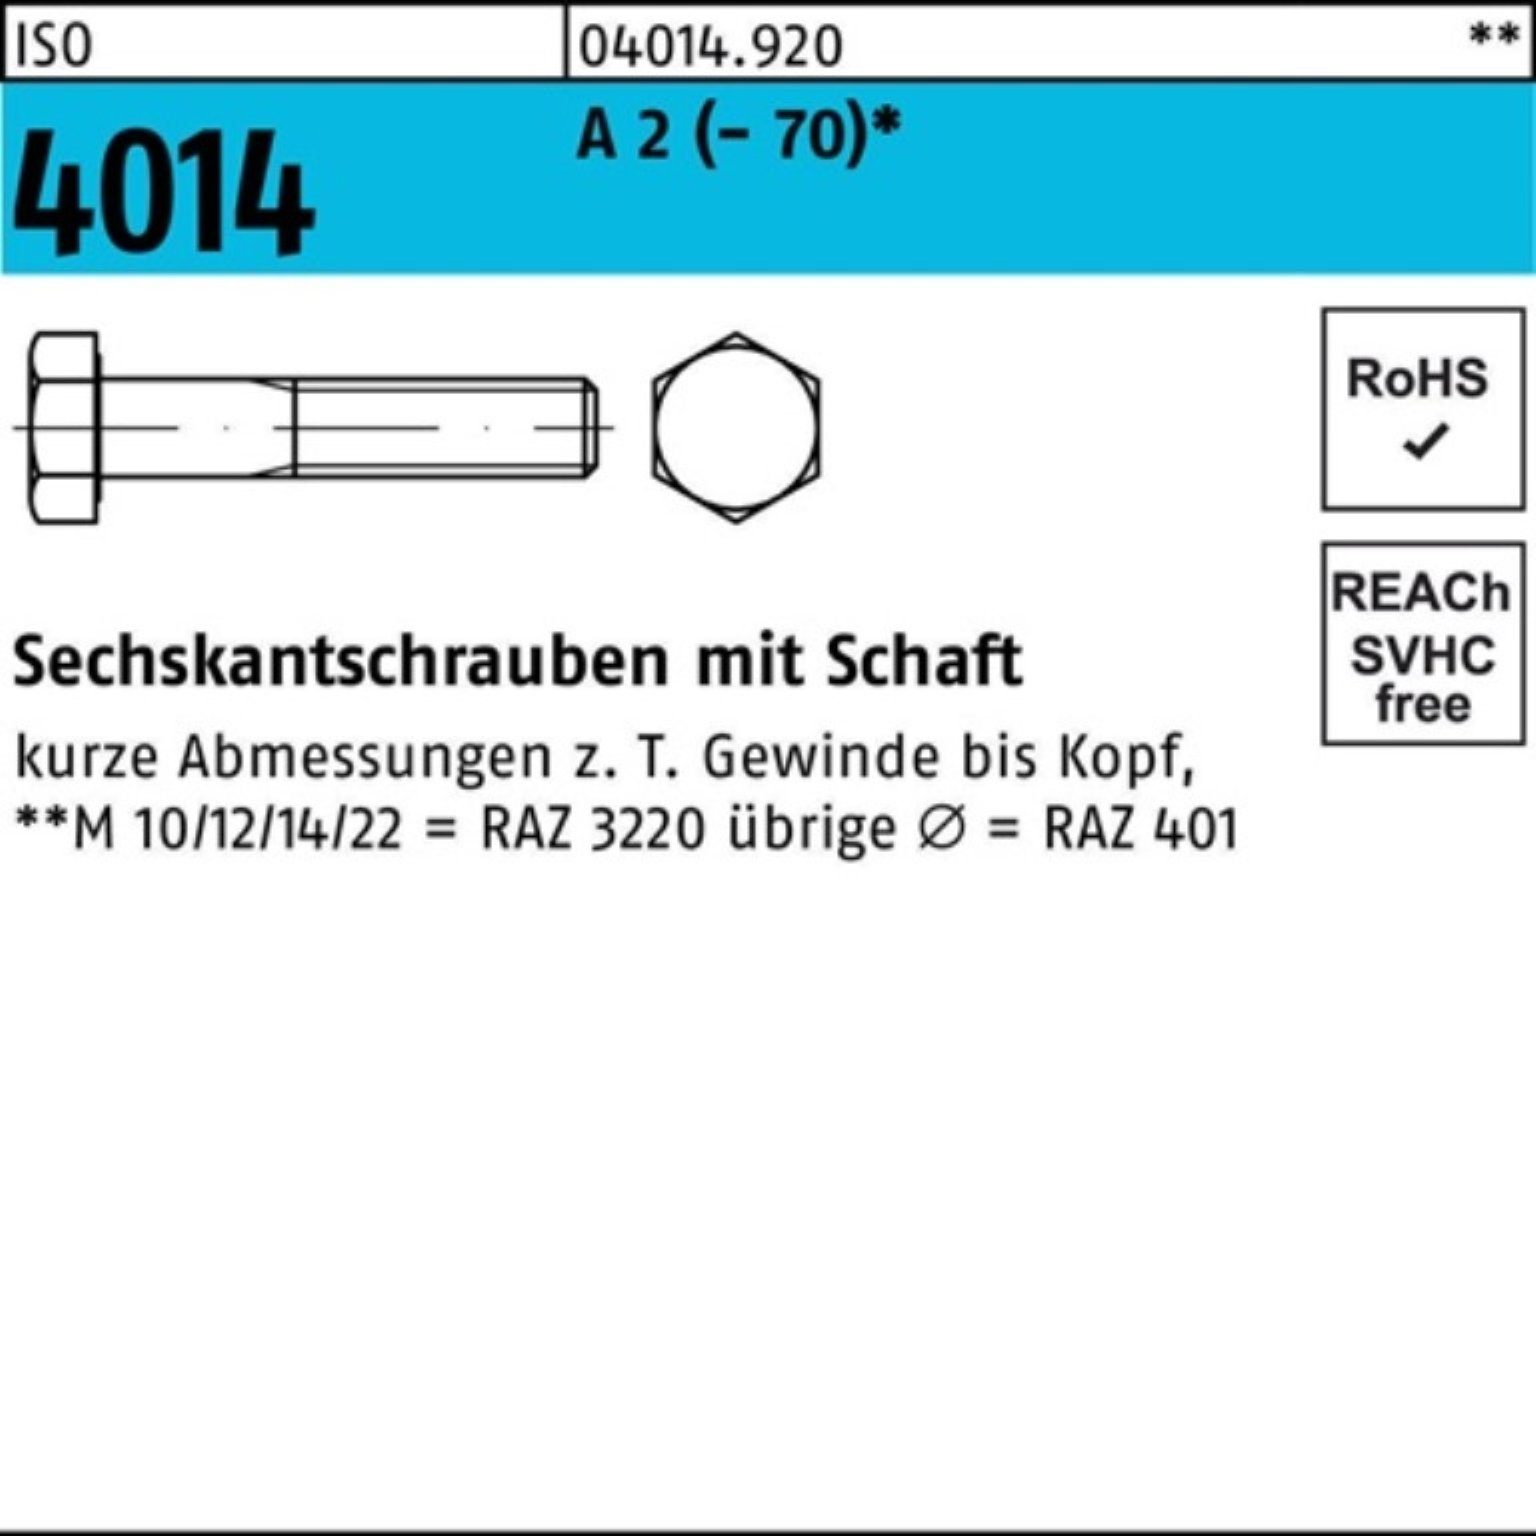 Bufab Sechskantschraube 100er Pack Sechskantschraube ISO 4014 Schaft M16x 75 A 2 (70) 25 St